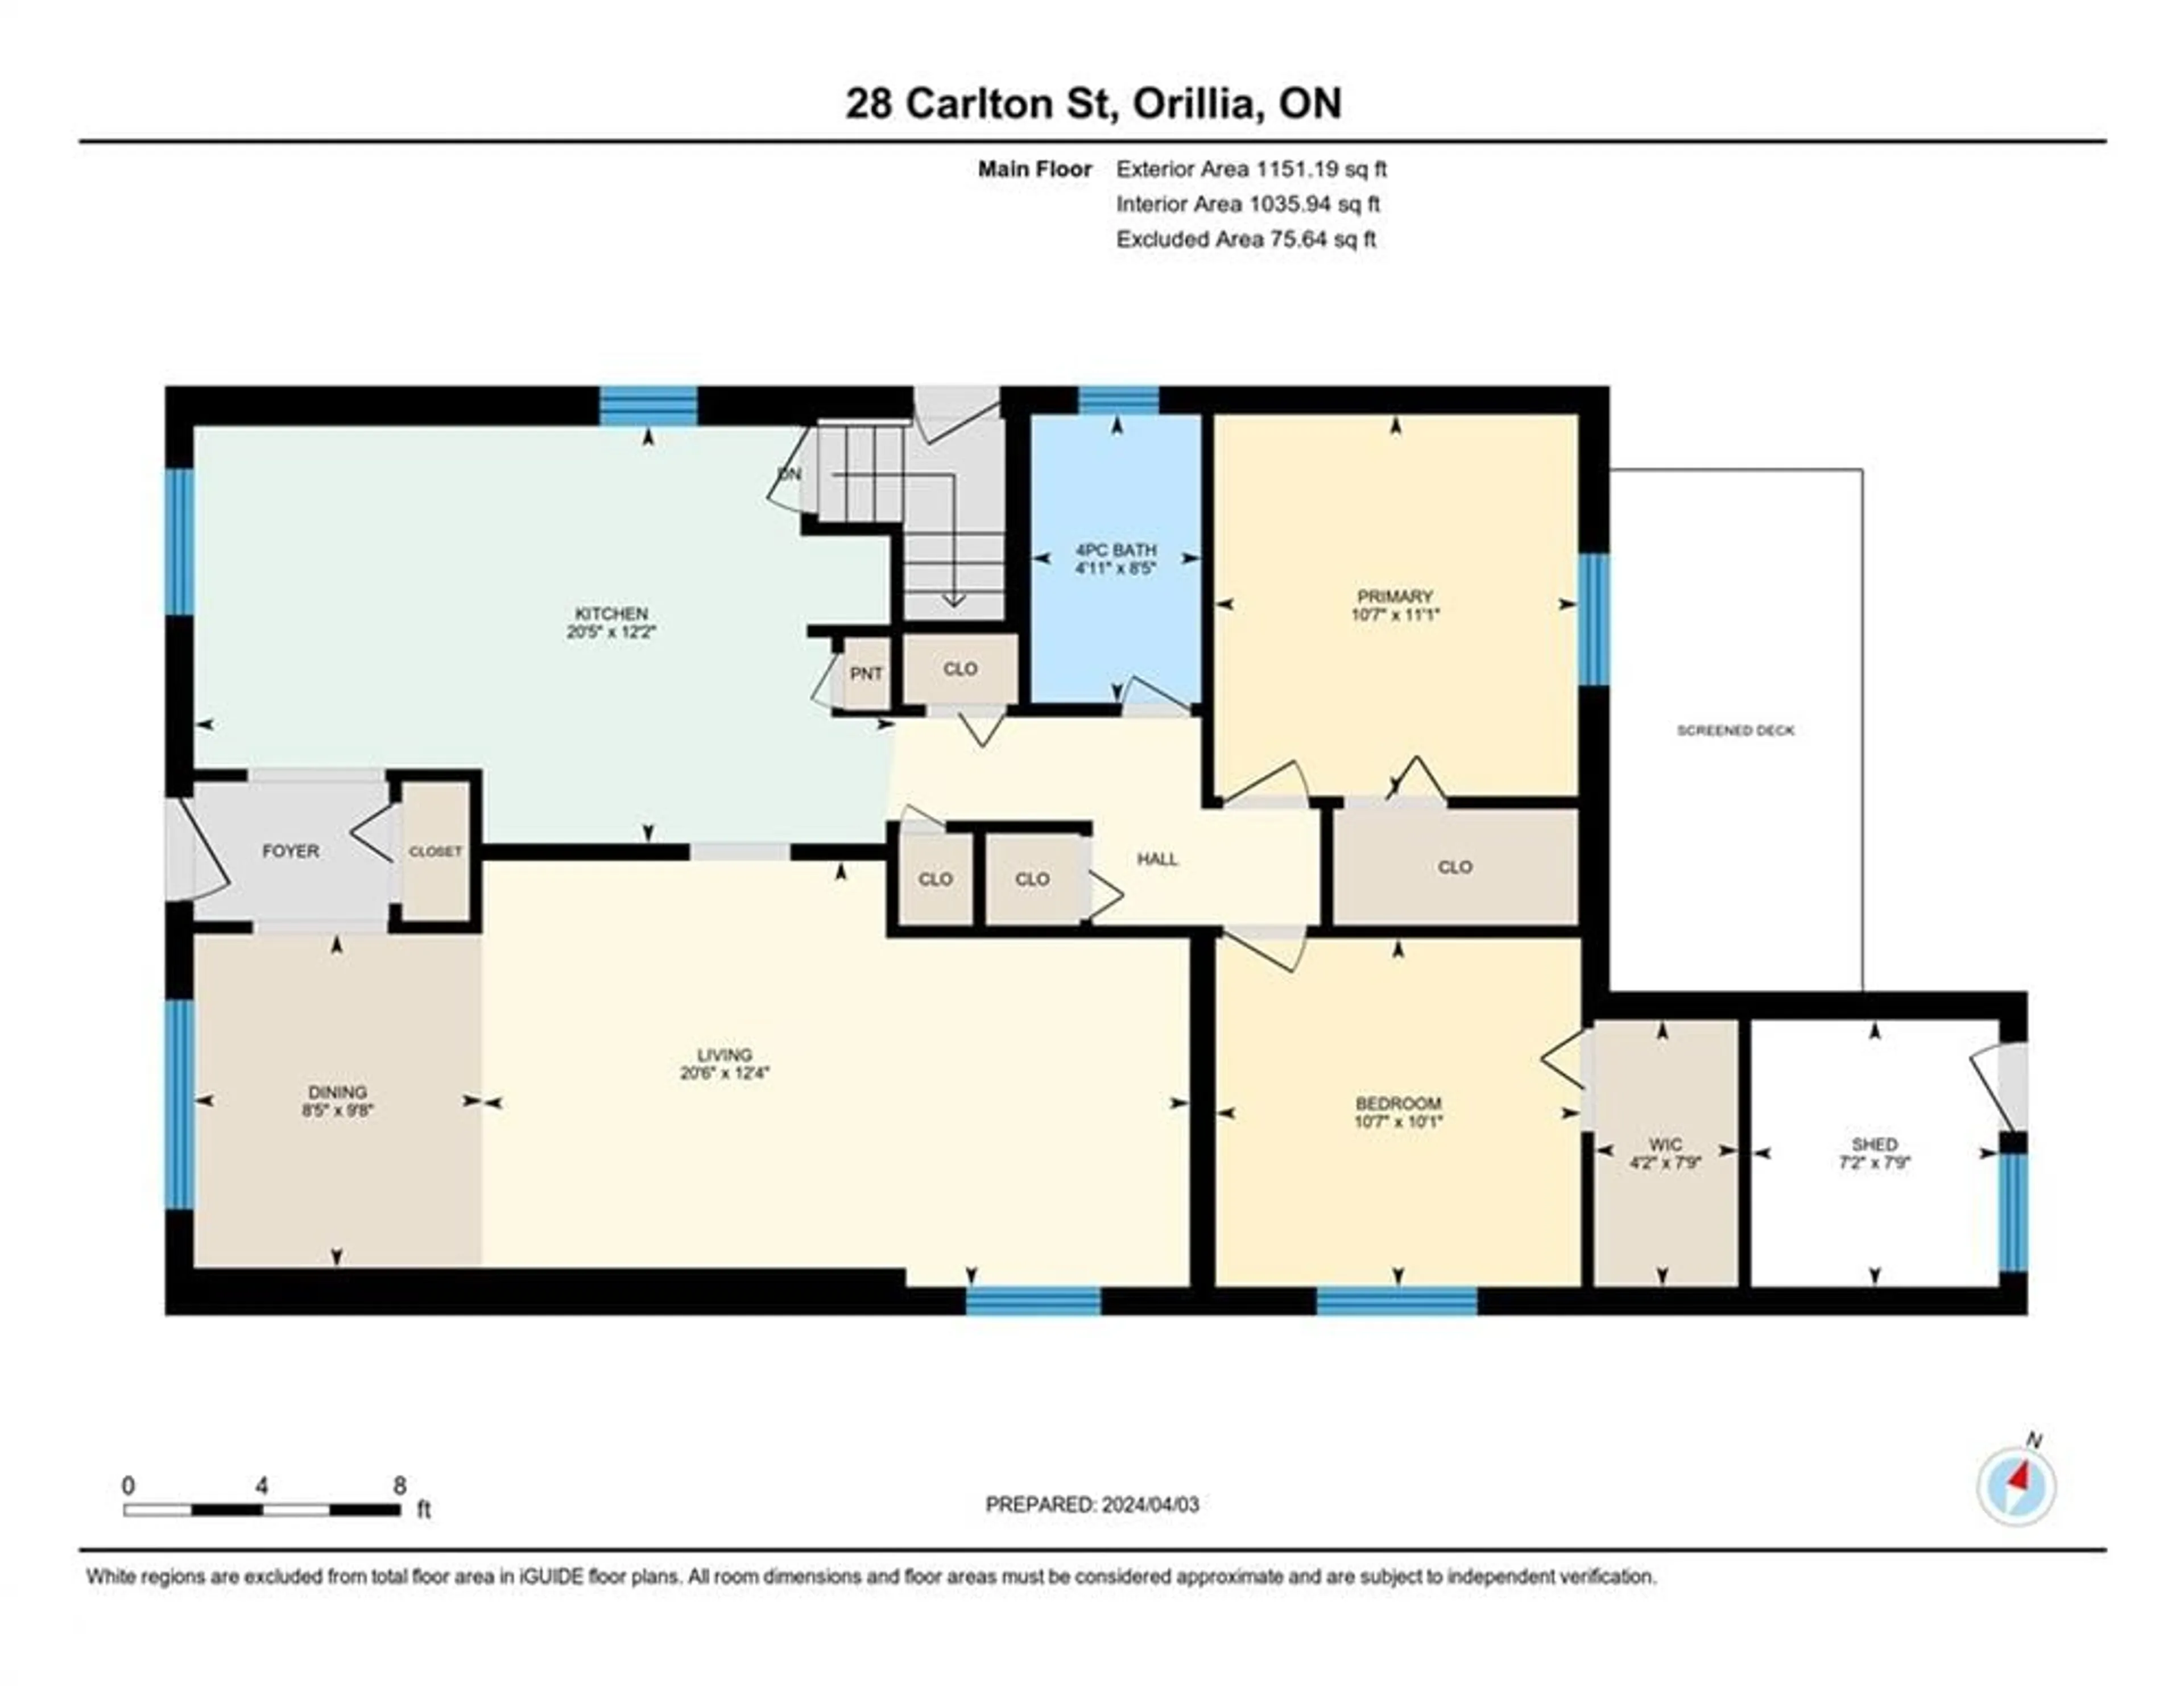 Floor plan for 28 Carleton St, Orillia Ontario L3V 6S7